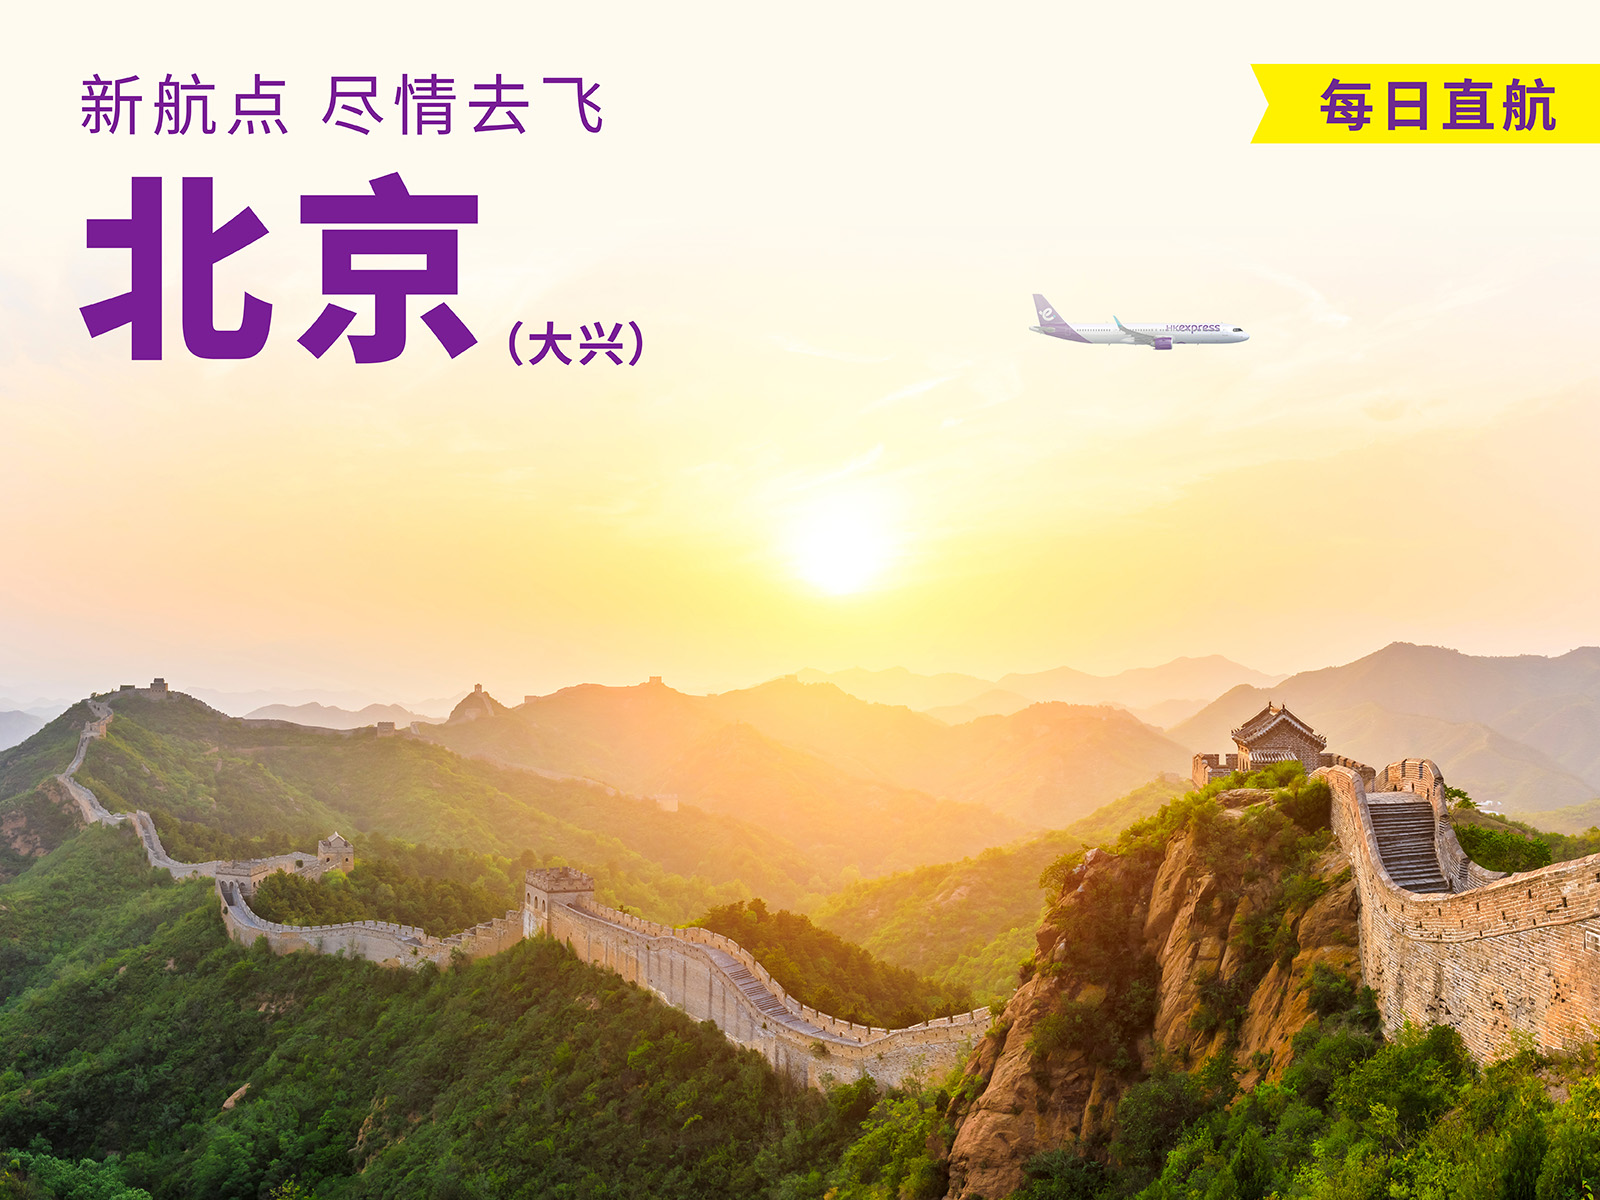 扩大飞行版图让大众尽情去飞   新航线助力促进京津冀与香港交流